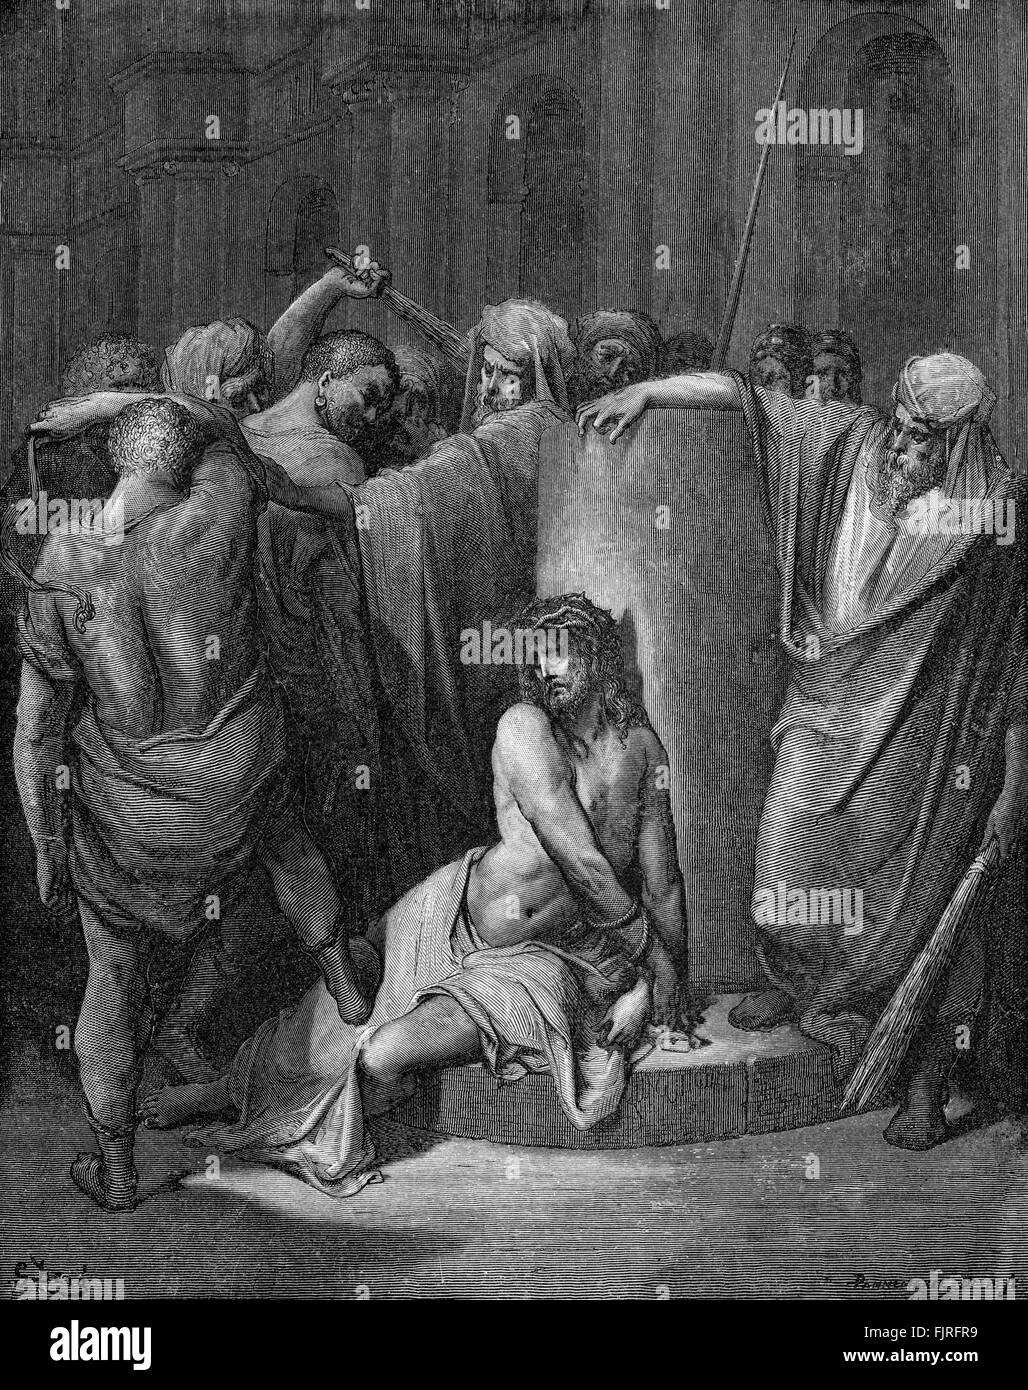 La Flagellazione di Cristo - Gesù è picchiato e dato una corona di spine (contrassegno capitolo XV), illustrazione di Gustave Doré (1832 - 1883) Foto Stock